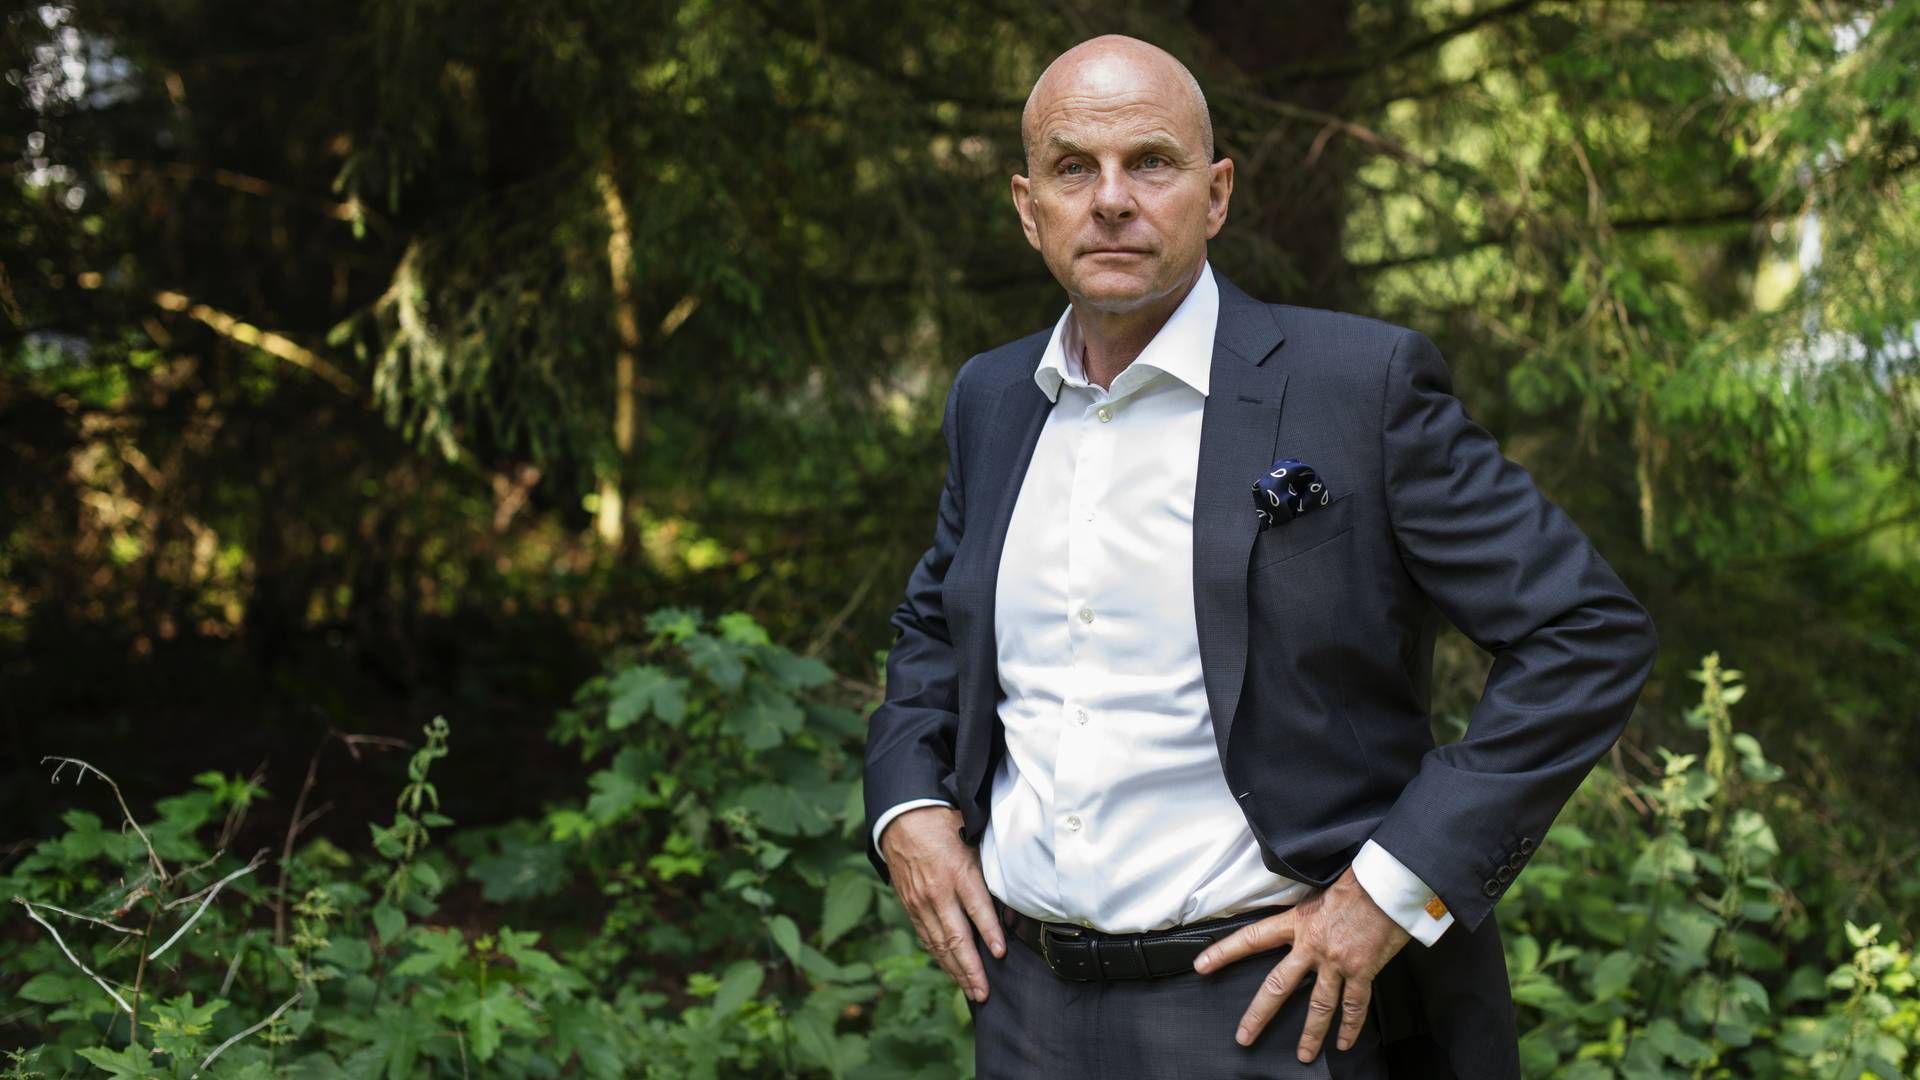 Carsten Hellmann, CEO of ALK | Photo: Gregers Tycho/ERH